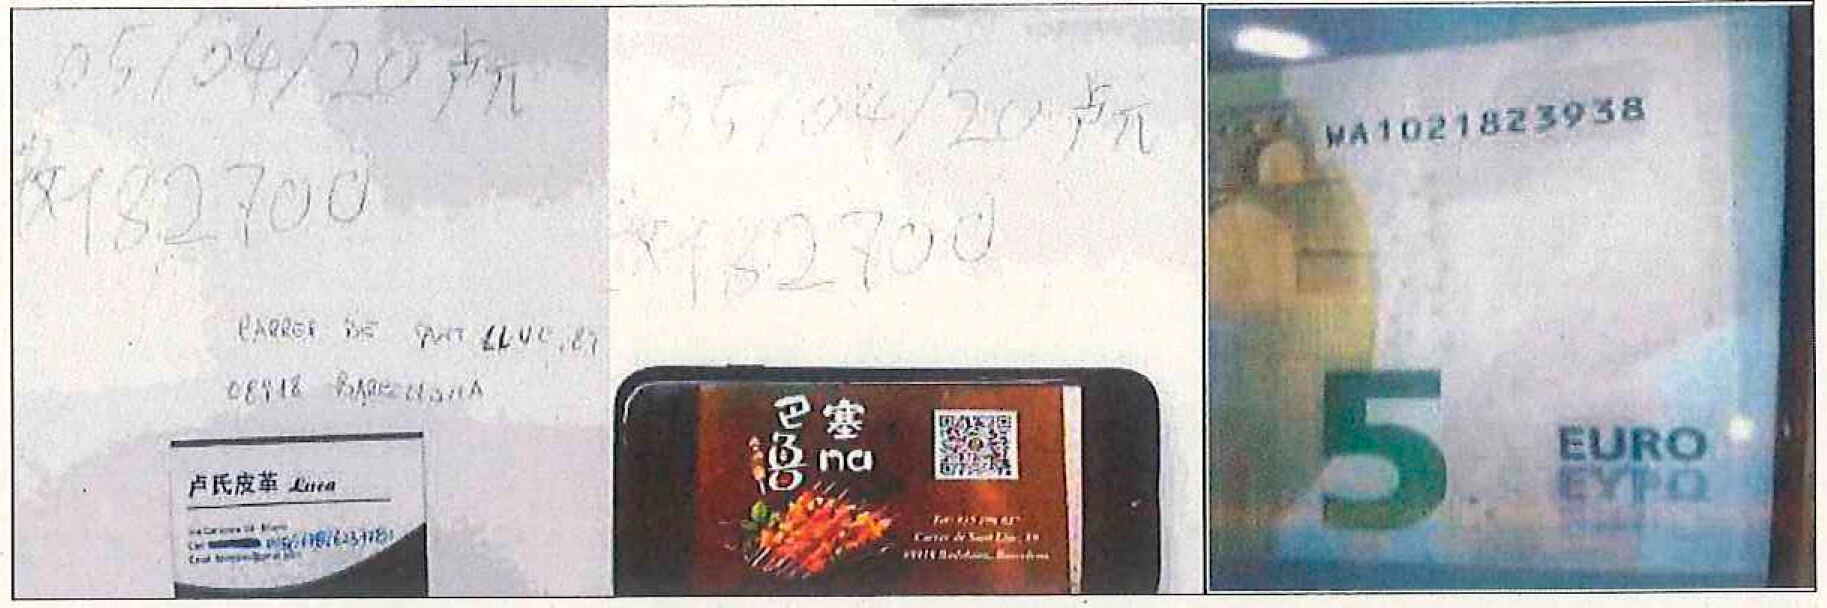 Una imagen encontrada en el teléfono de Rosario D'Onofrio muestra una tarjeta de visita de un local de Badalona para recoger el dinero, y una contraseña que corresponde con la numeración de un billete de cinco euros.